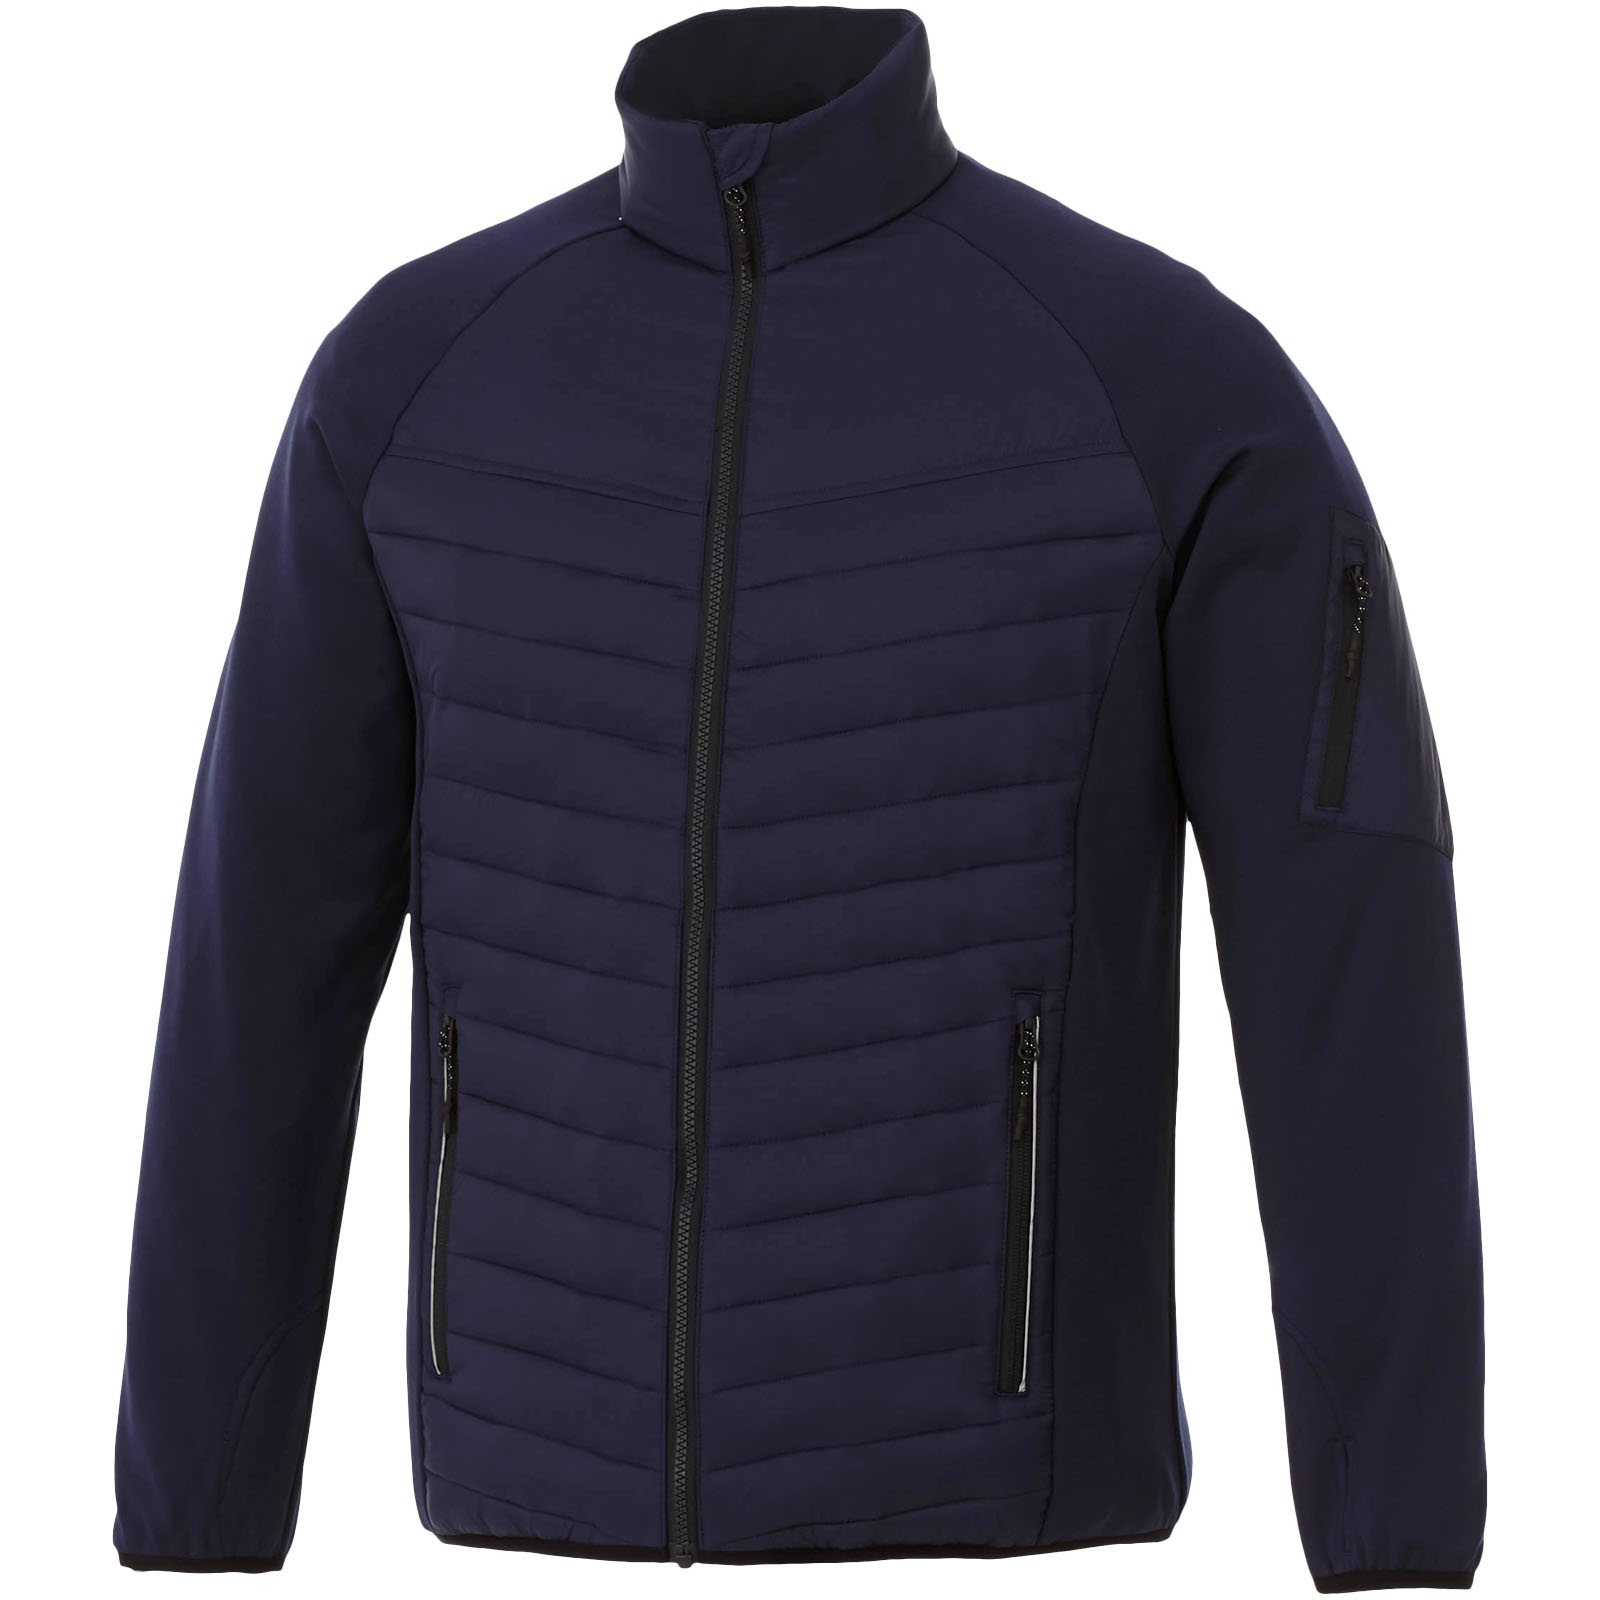 Clothing - Banff men's hybrid insulated jacket